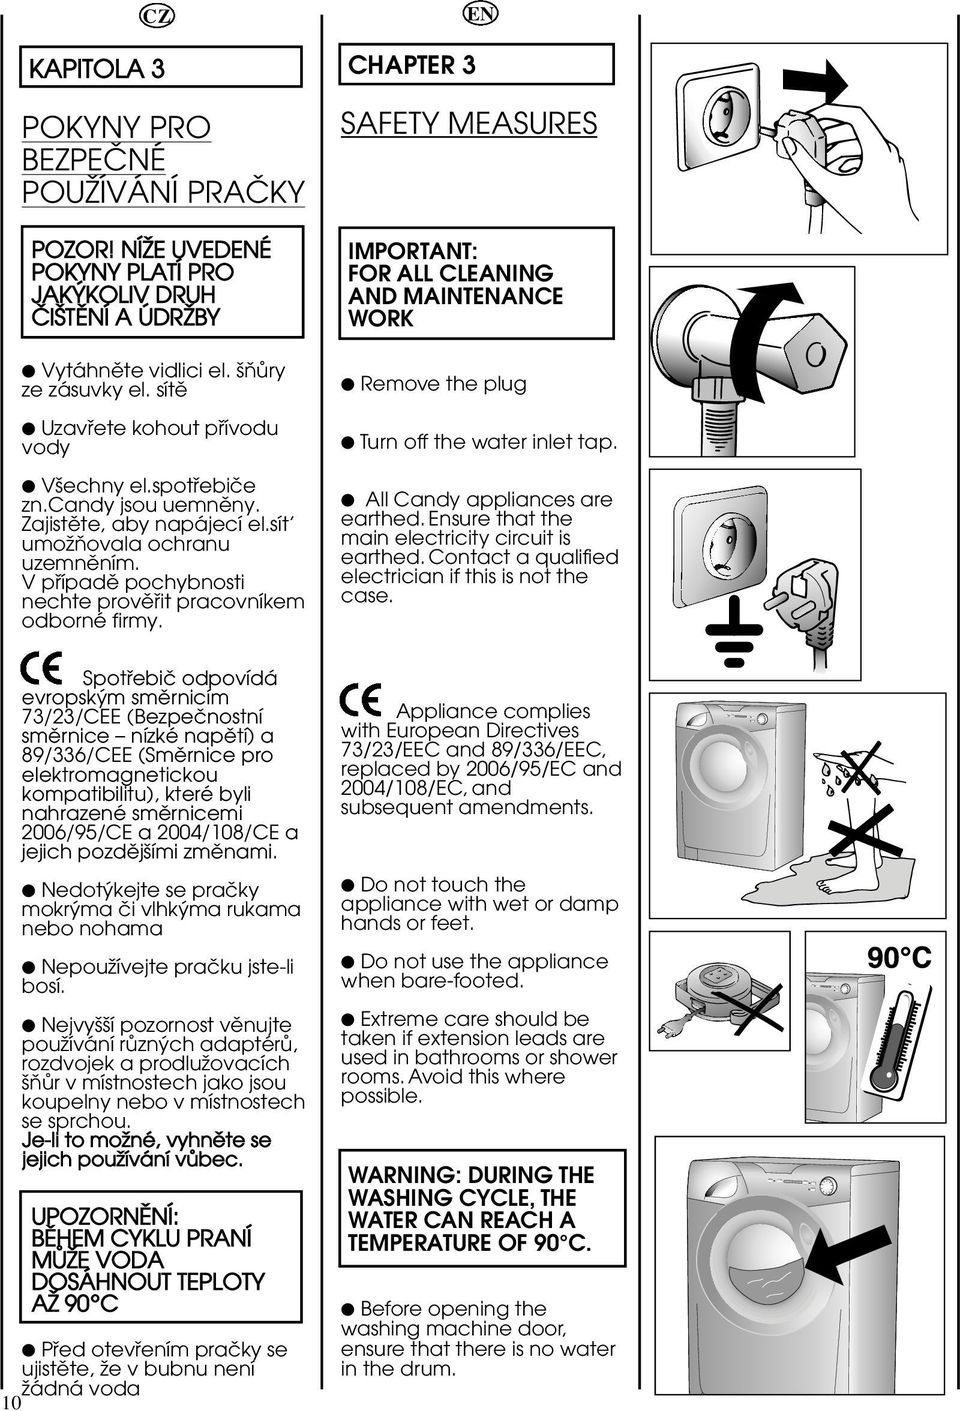 V püípadë pochybnosti nechte provëüit pracovníkem odborné firmy. CHAPTER 3 EN SAFETY MEASURES IMPORTANT: FOR ALL CLEANING AND MAINTENANCE WORK Remove the plug Turn off the water inlet tap.